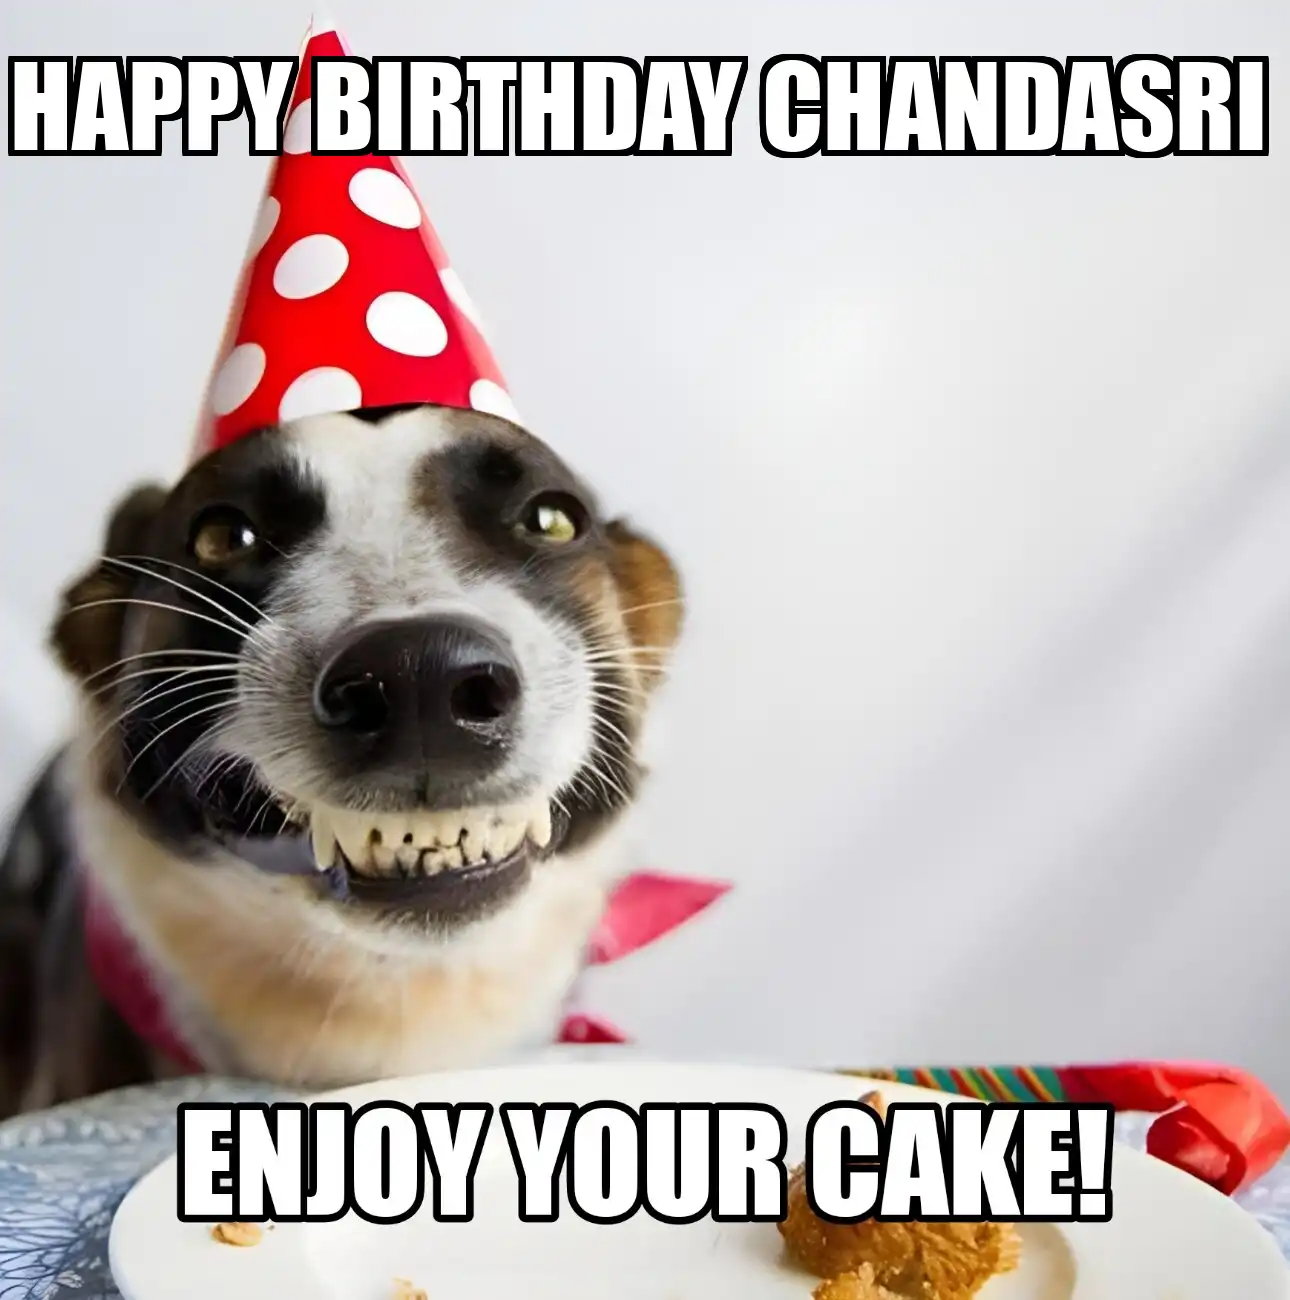 Happy Birthday Chandasri Enjoy Your Cake Dog Meme